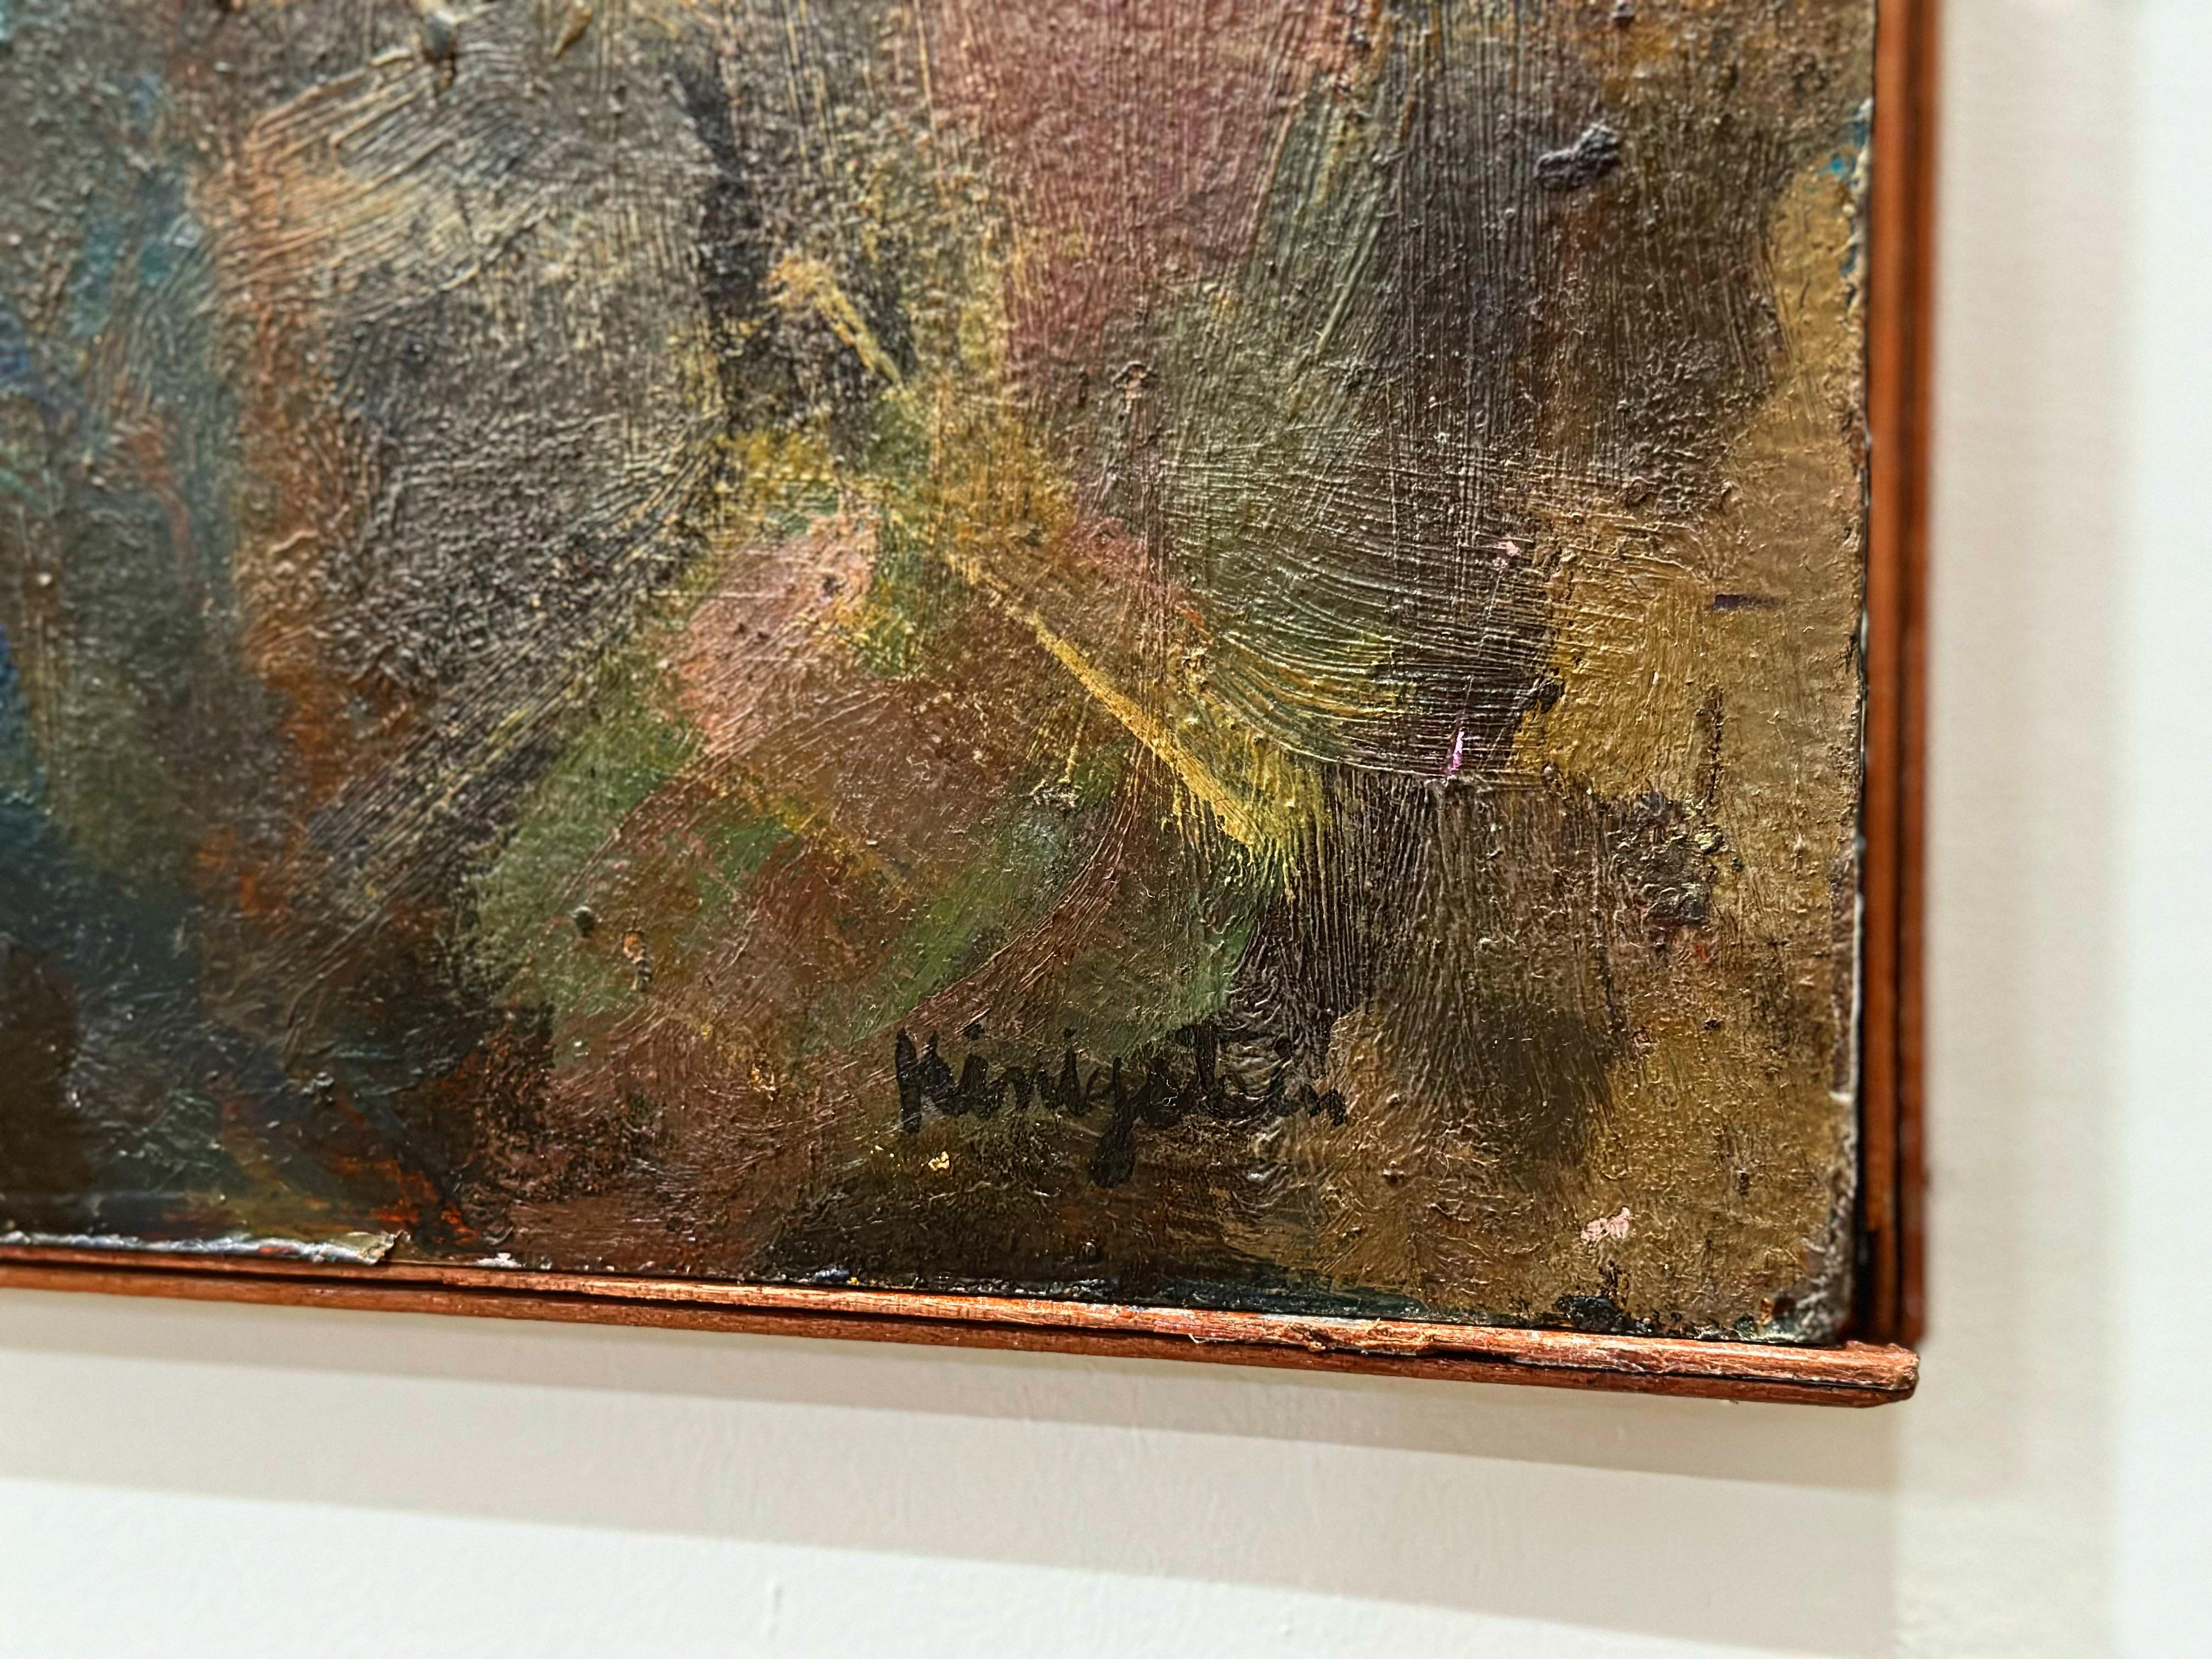 Huile impressionniste abstraite sur panneau de l'artiste new-yorkais Jonah Kinigstein.
Intitulé 